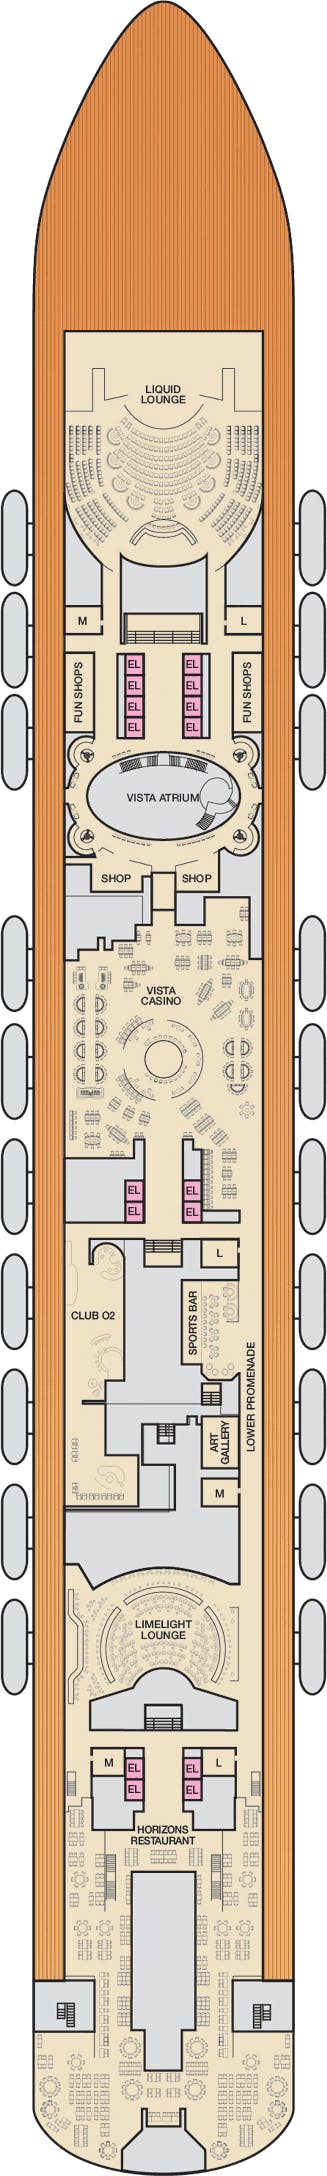 Carnival Vista - Carnival Cruise Line - Deck 4 (Mezzanine)